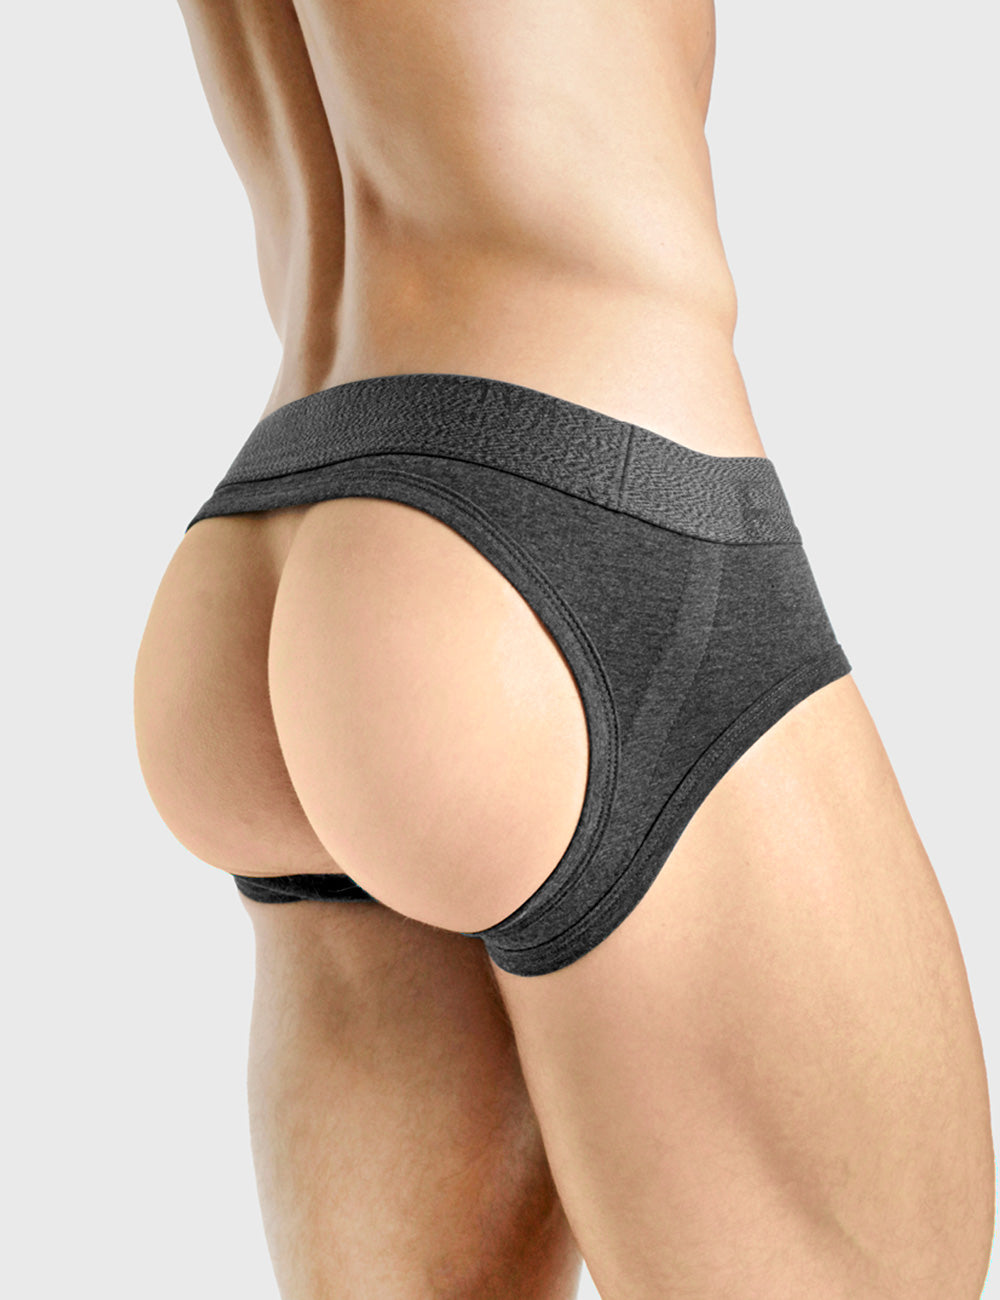 Backless Men's Underwear - Jock Briefs from Bum-Chums – Bum-Chums